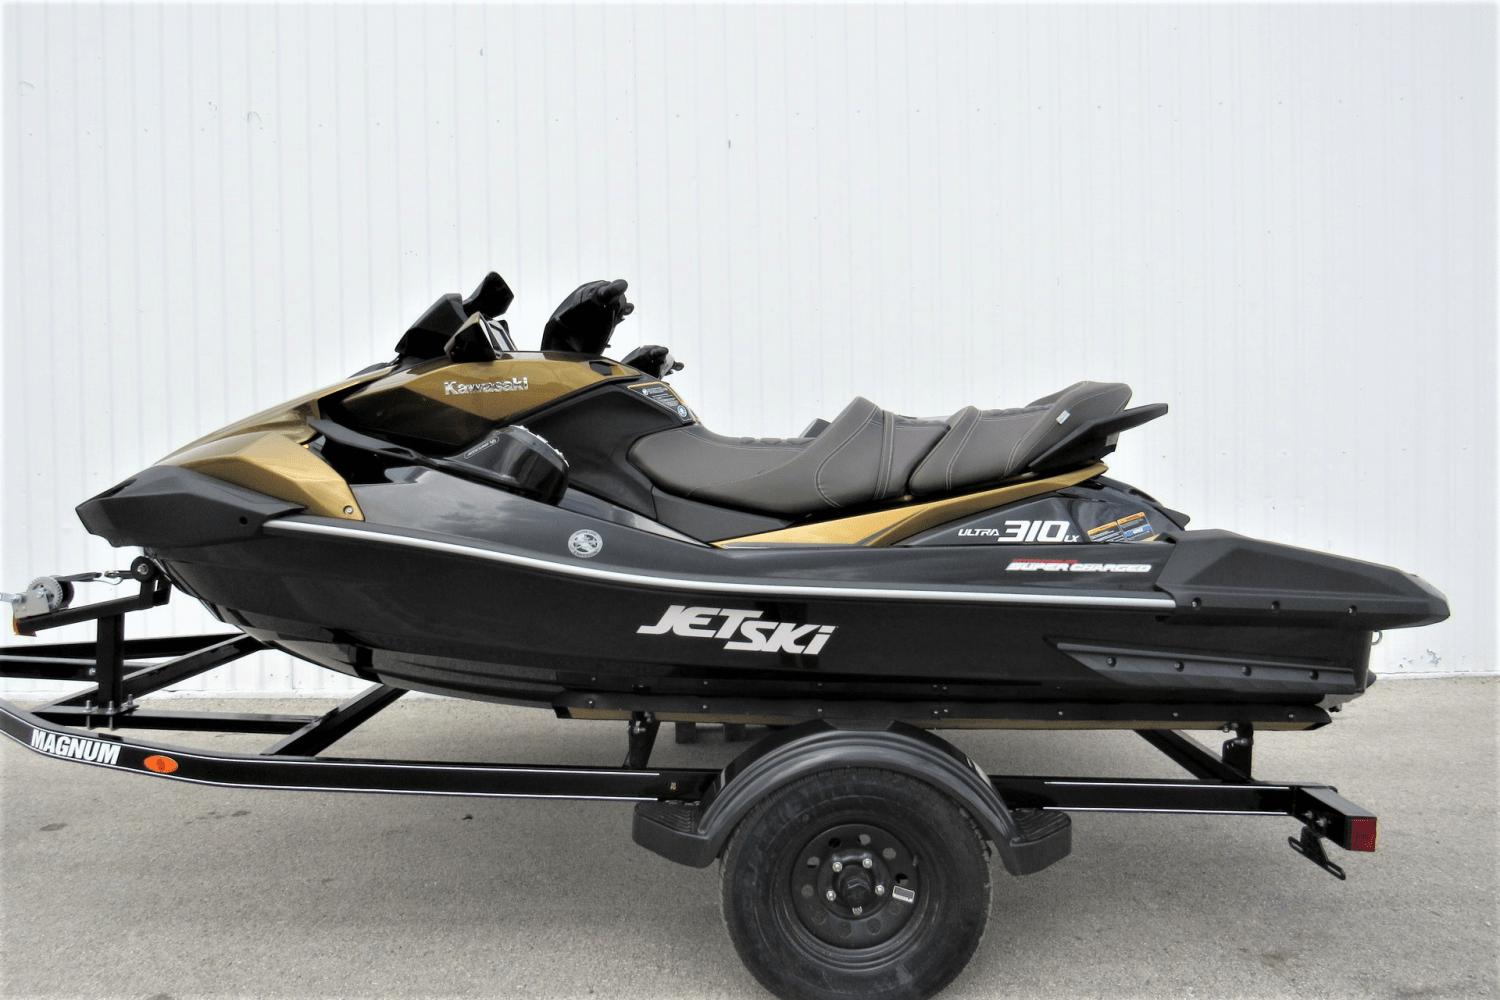 2023 Kawasaki Ultra 310LX, Lakeway Texas - boats.com